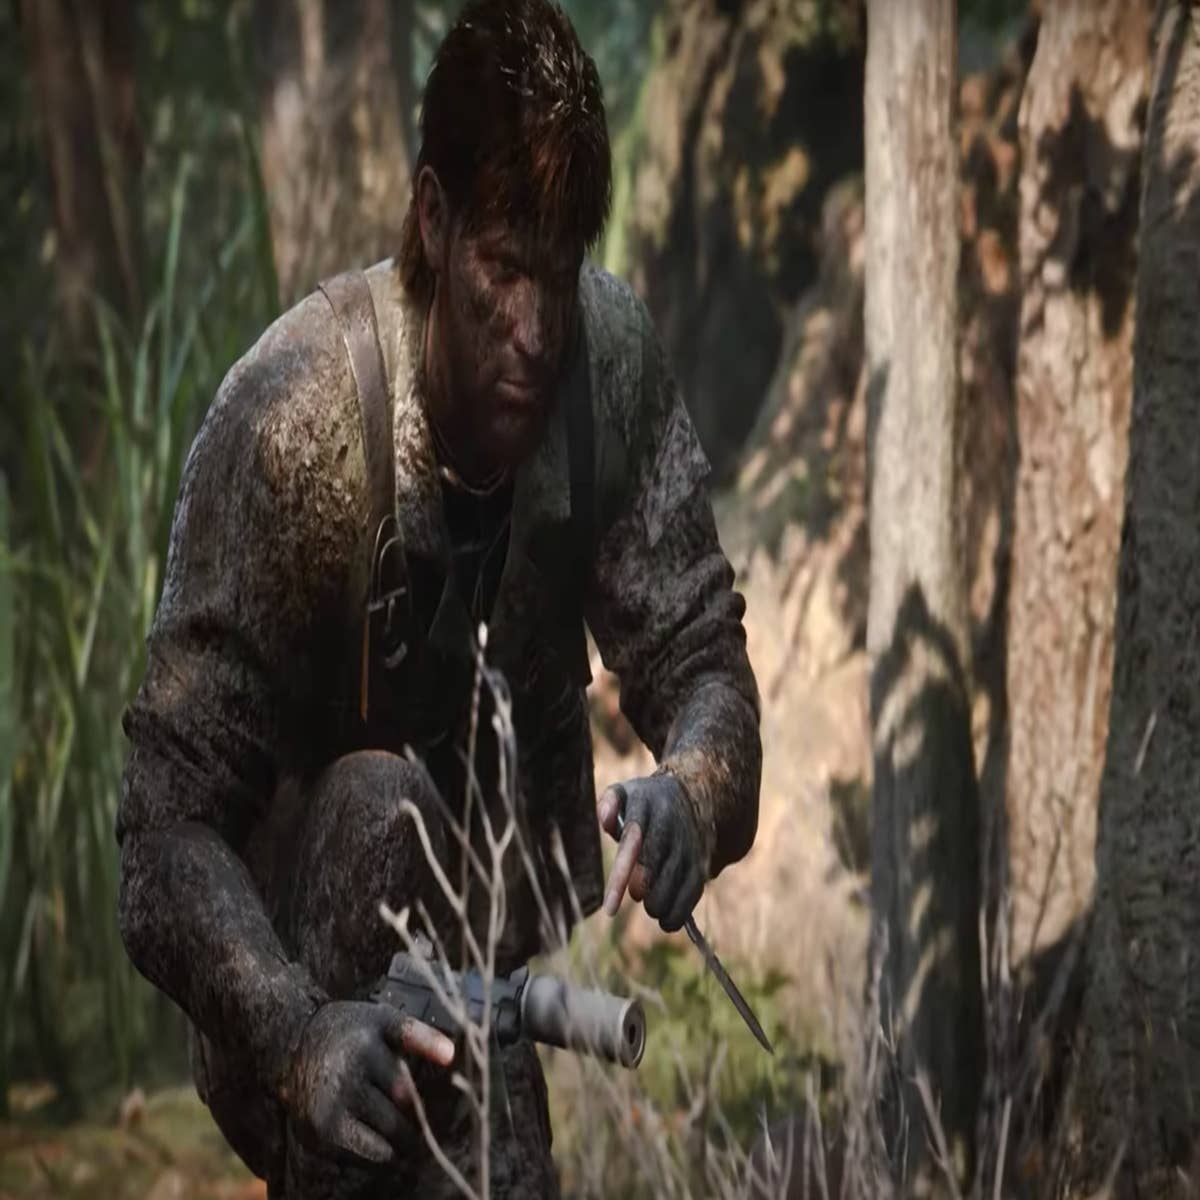 Metal Gear Solid 3 Snake Eater Remake Trailer